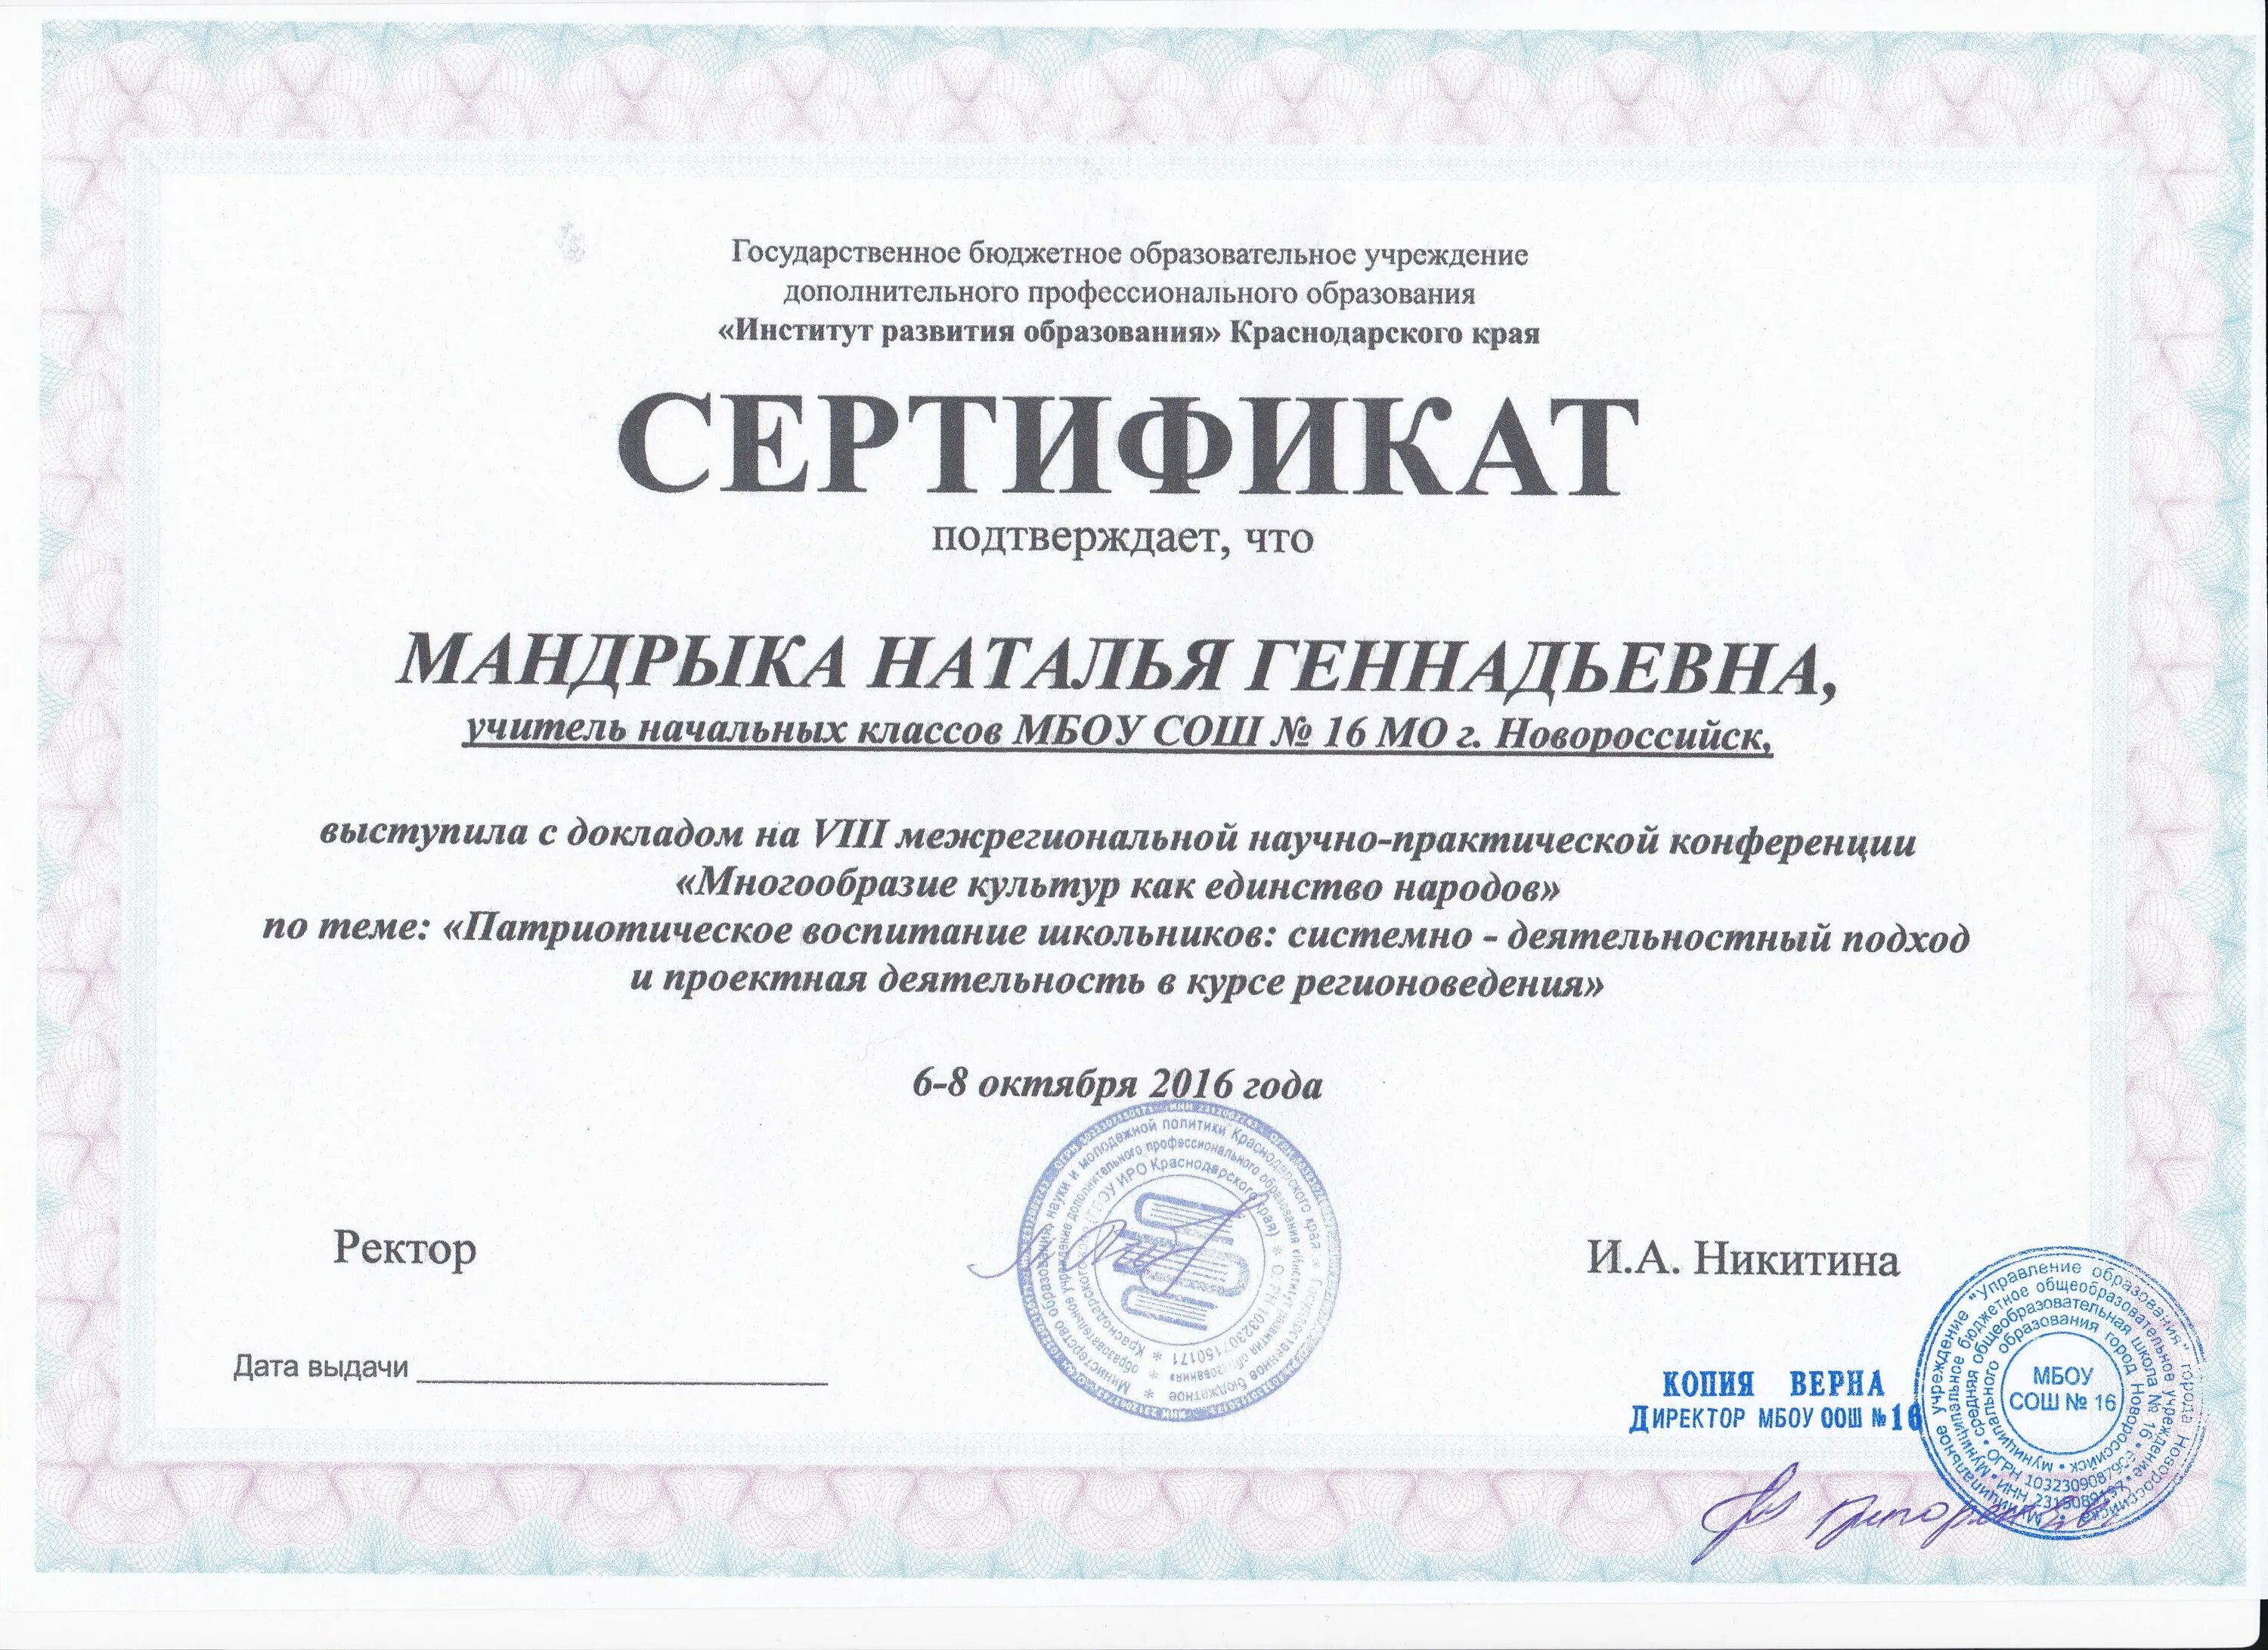 Практическая результаты 25 измерений. Институт развития образования Краснодарского края. Сертификат об опыте работы. Сертификаты обмен опытом.